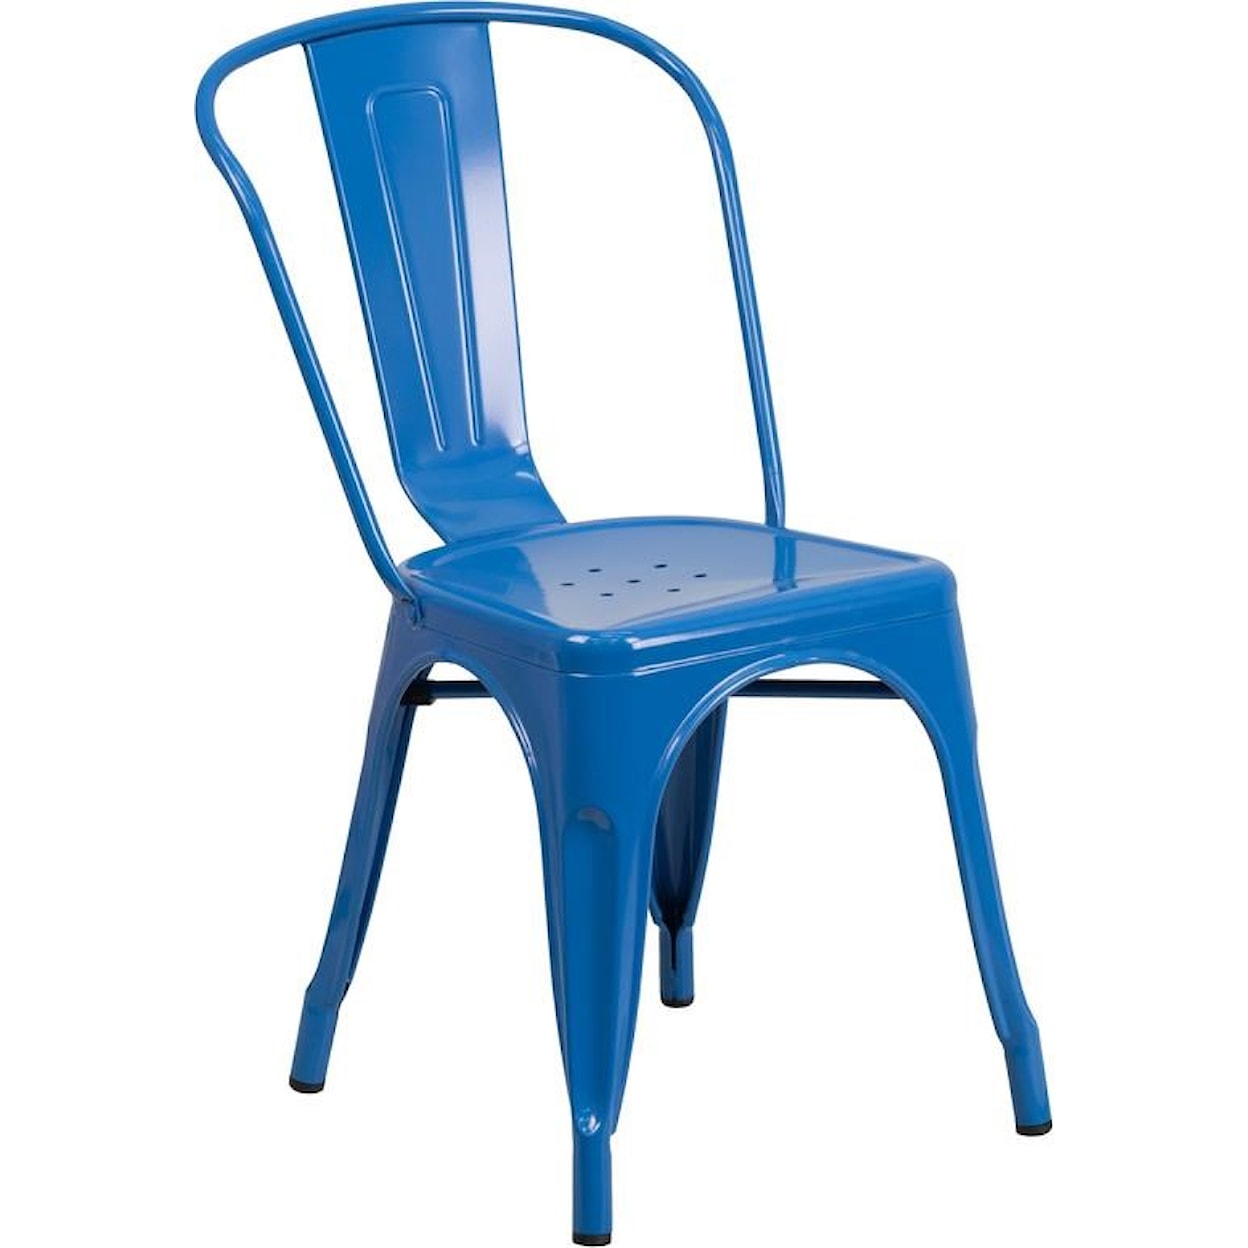 Winslow Home Metal Indoor-Outdoor Chairs Blue Metal Indoor-Outdoor Stackable Chair